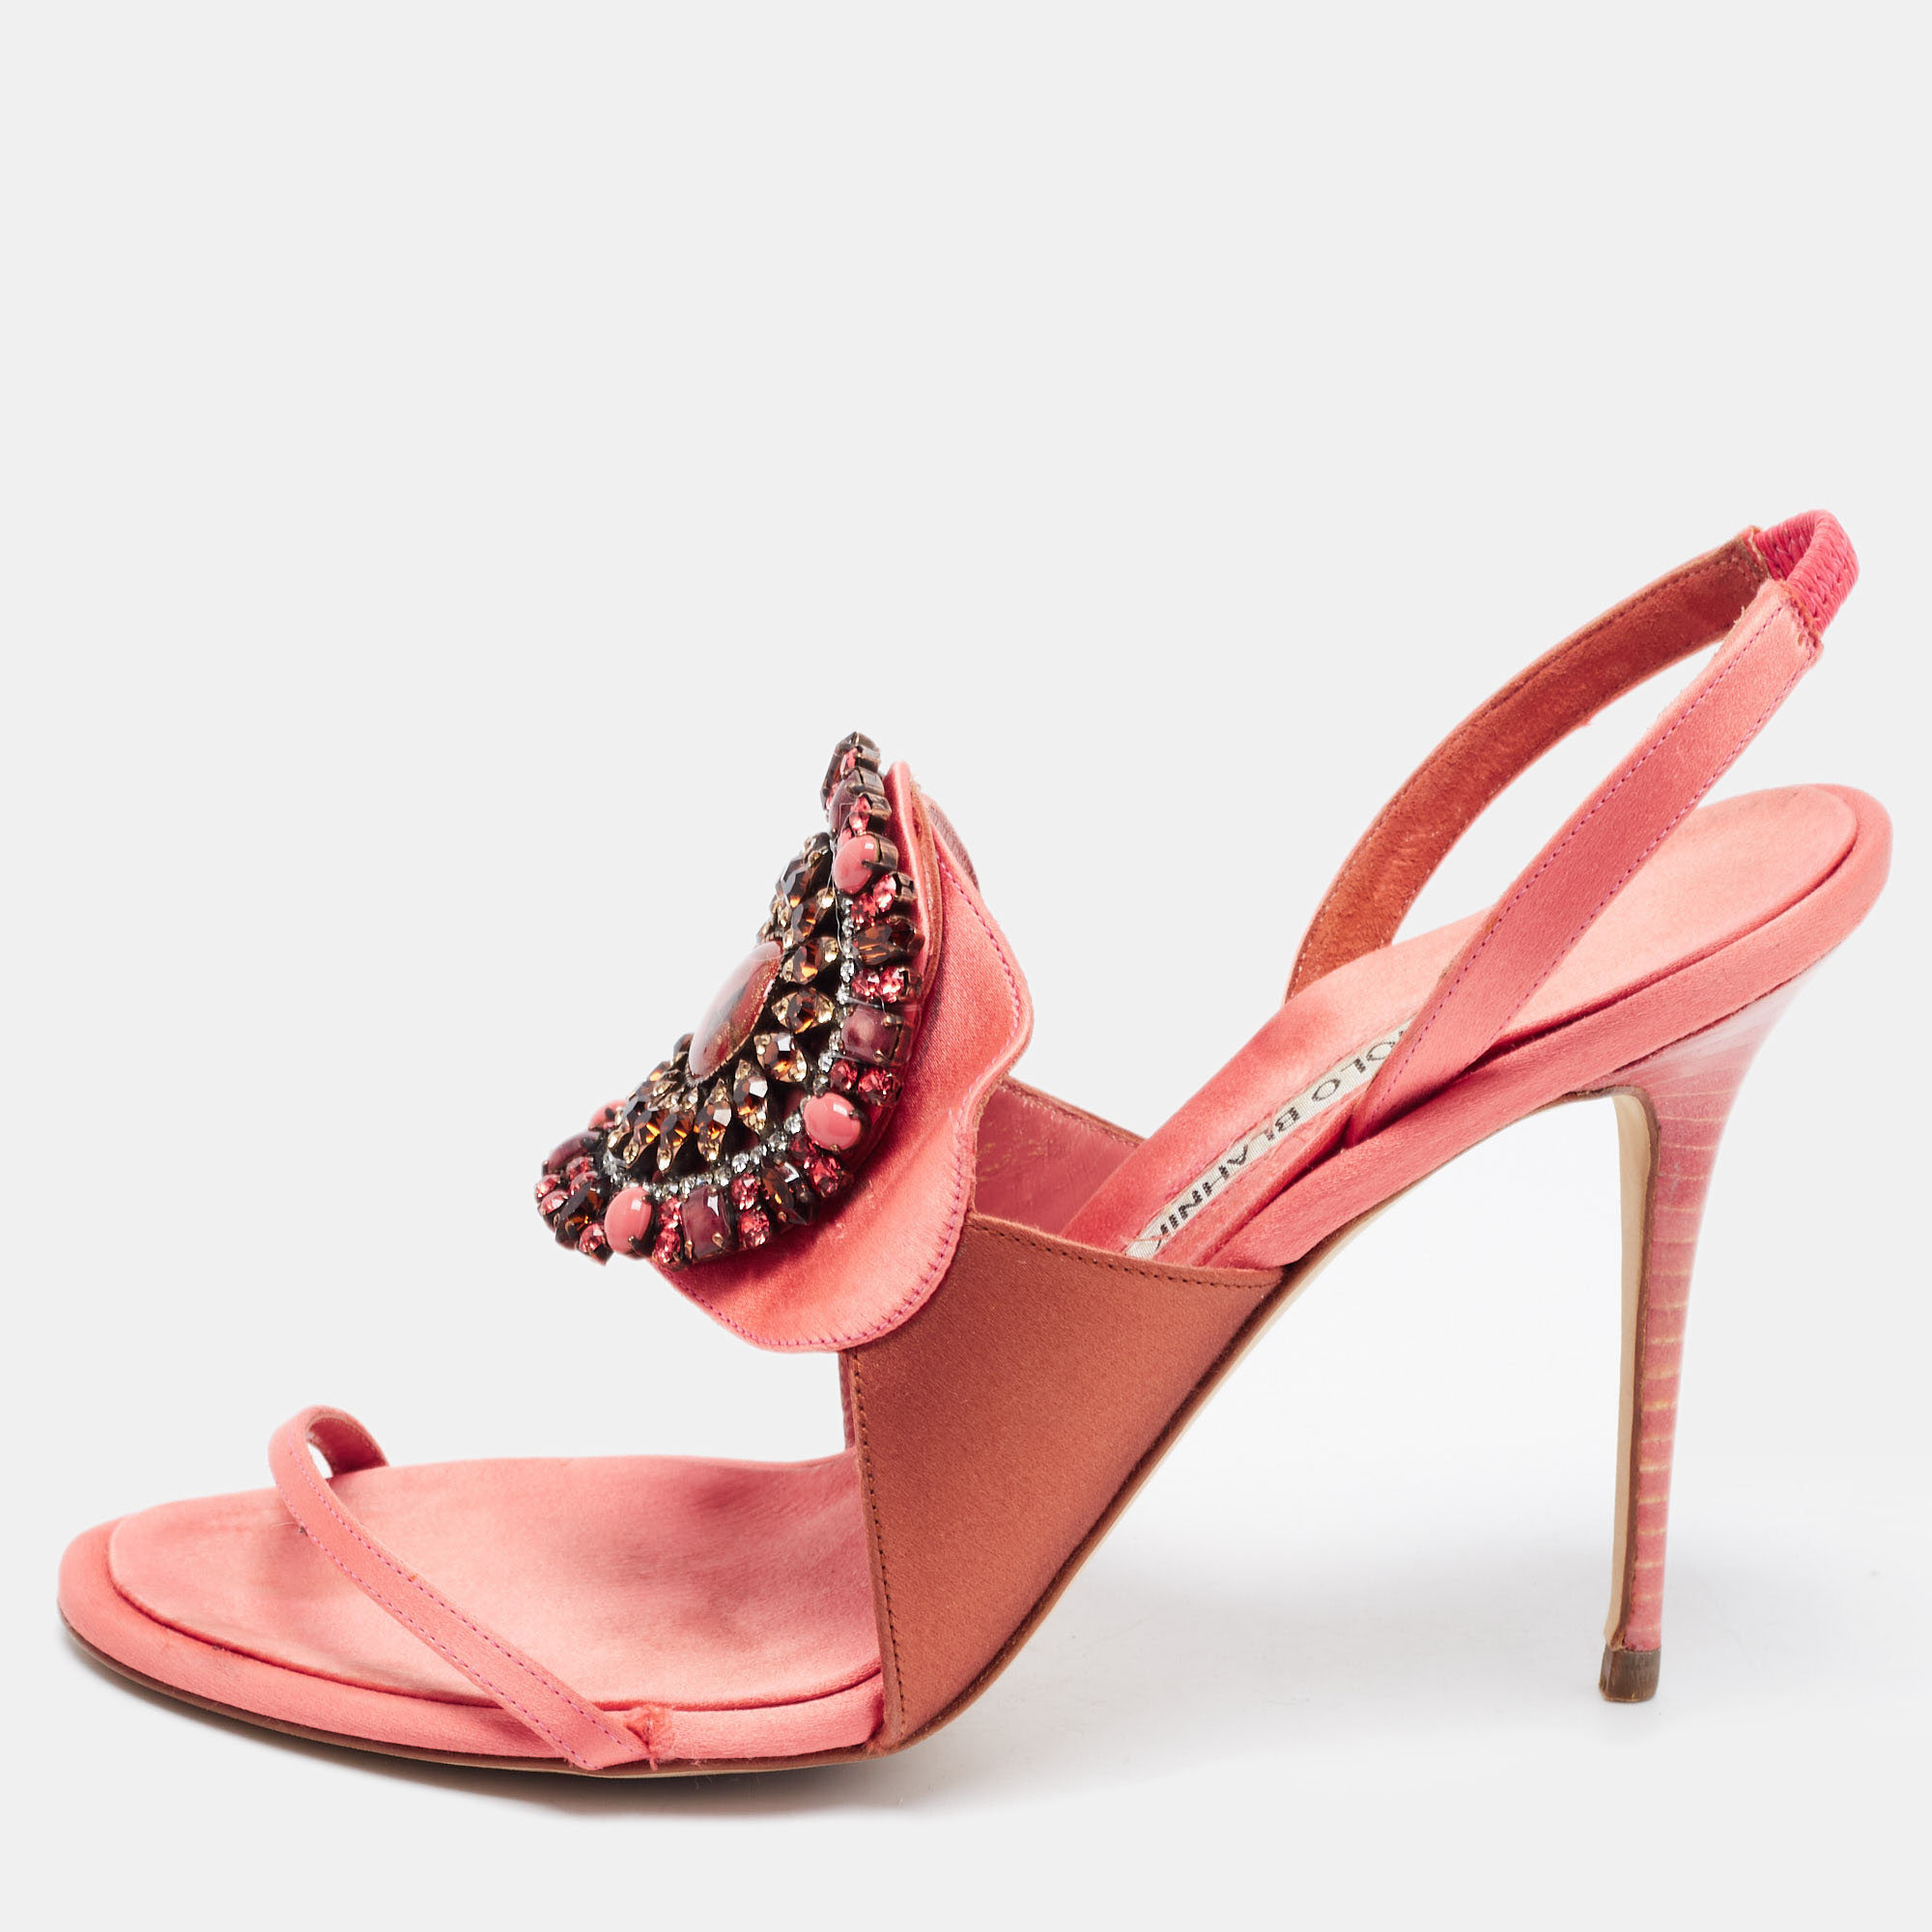 Manolo Blahnik Pink/Brown Satin Crystal Embellished Ankle Strap Sandals Size 37.5